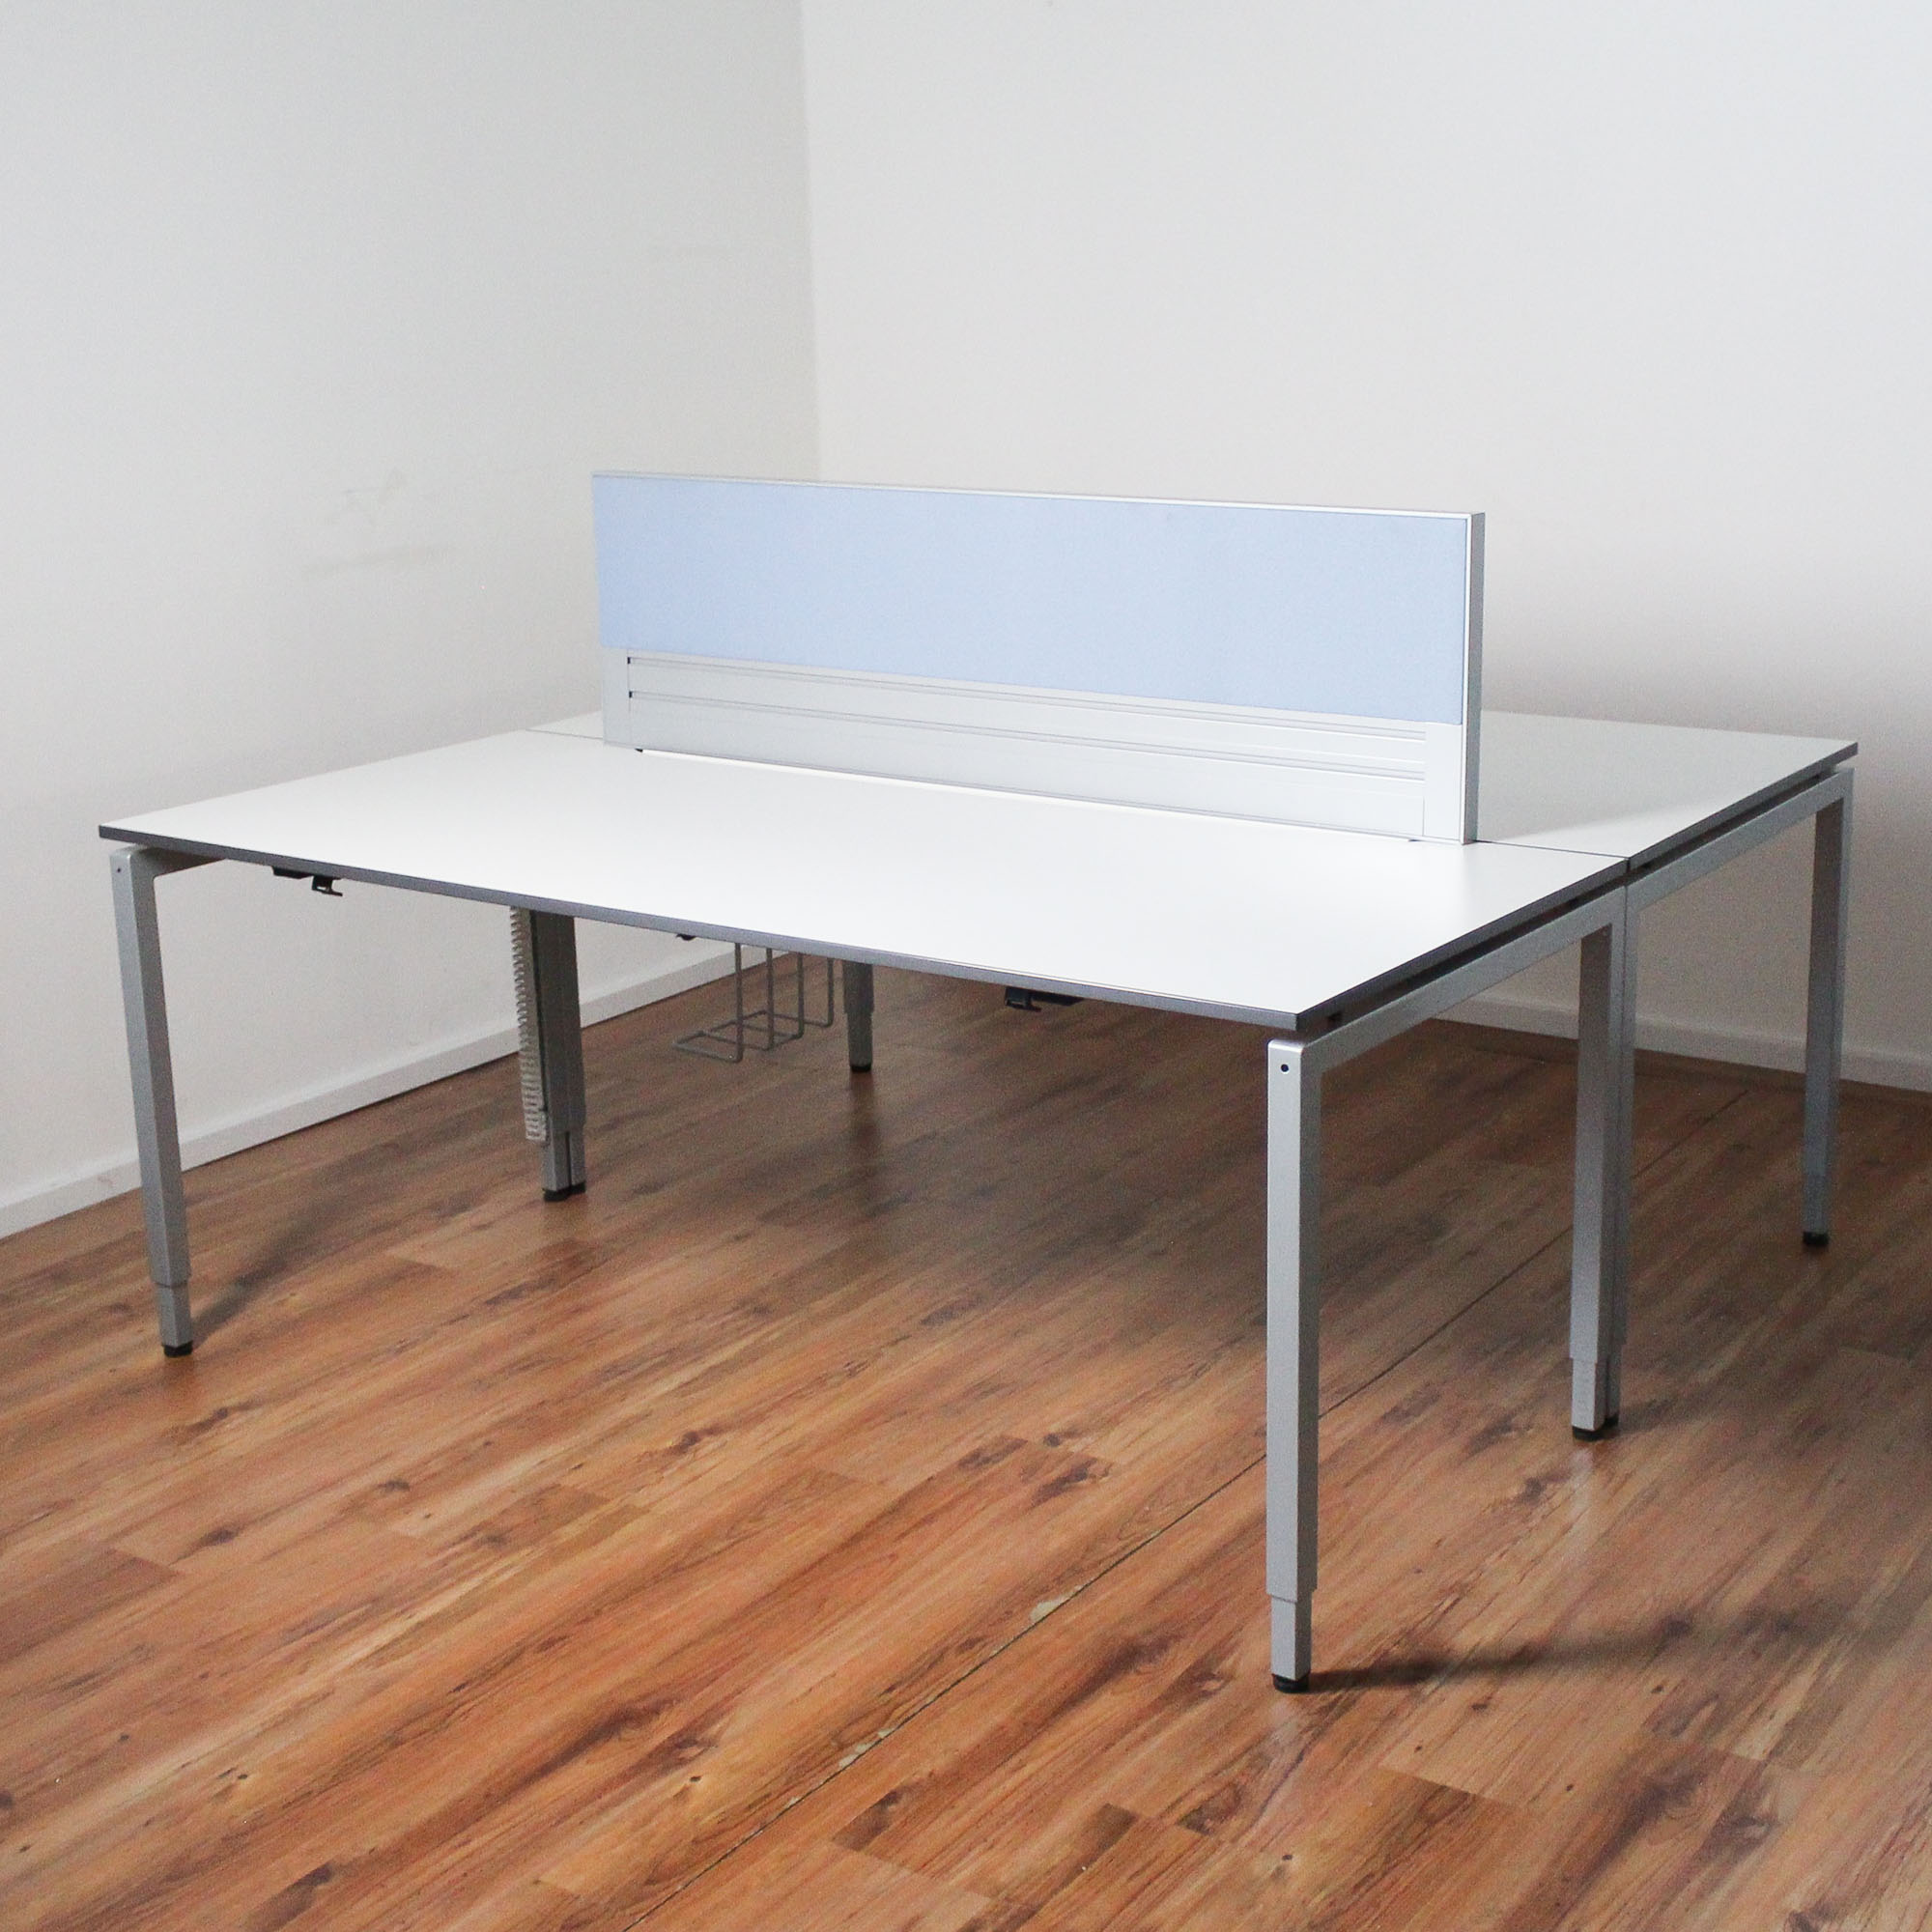 VS Doppel-Arbeitsplatz - Schreibtisch - 2 x 180x80 cm - mit Trennwand